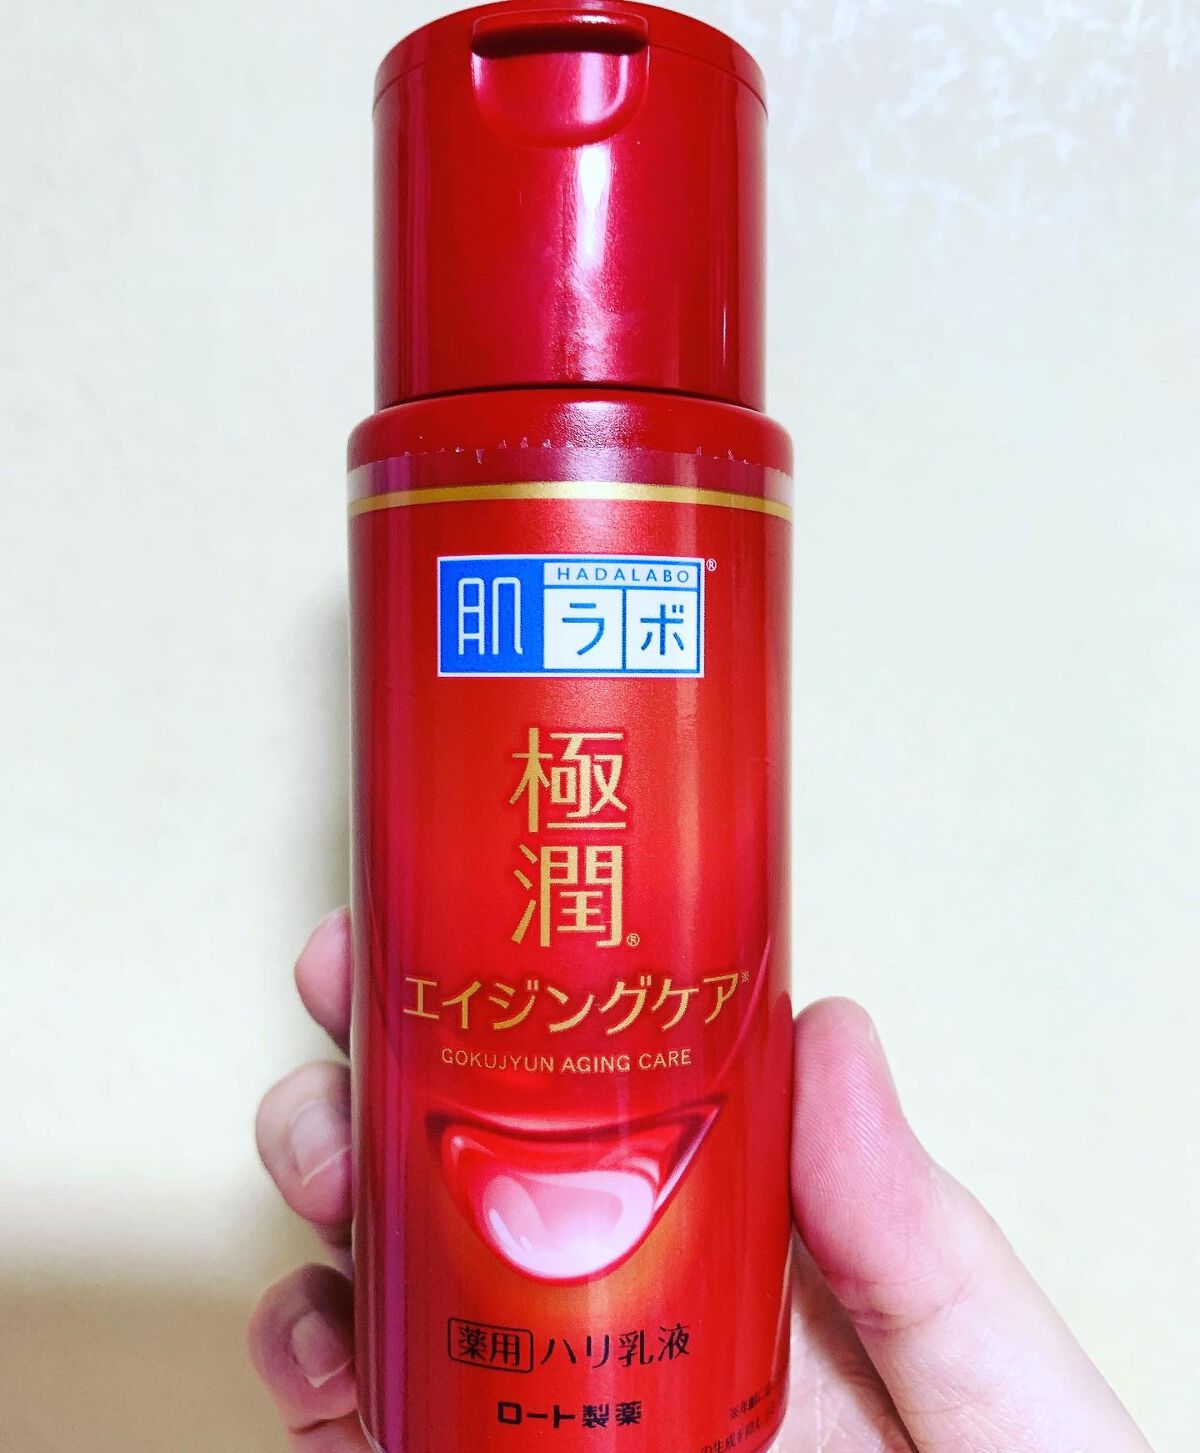 ◇高品質 つめかえ用 肌ラボ 極潤 化粧水 乳液セット新品未使用